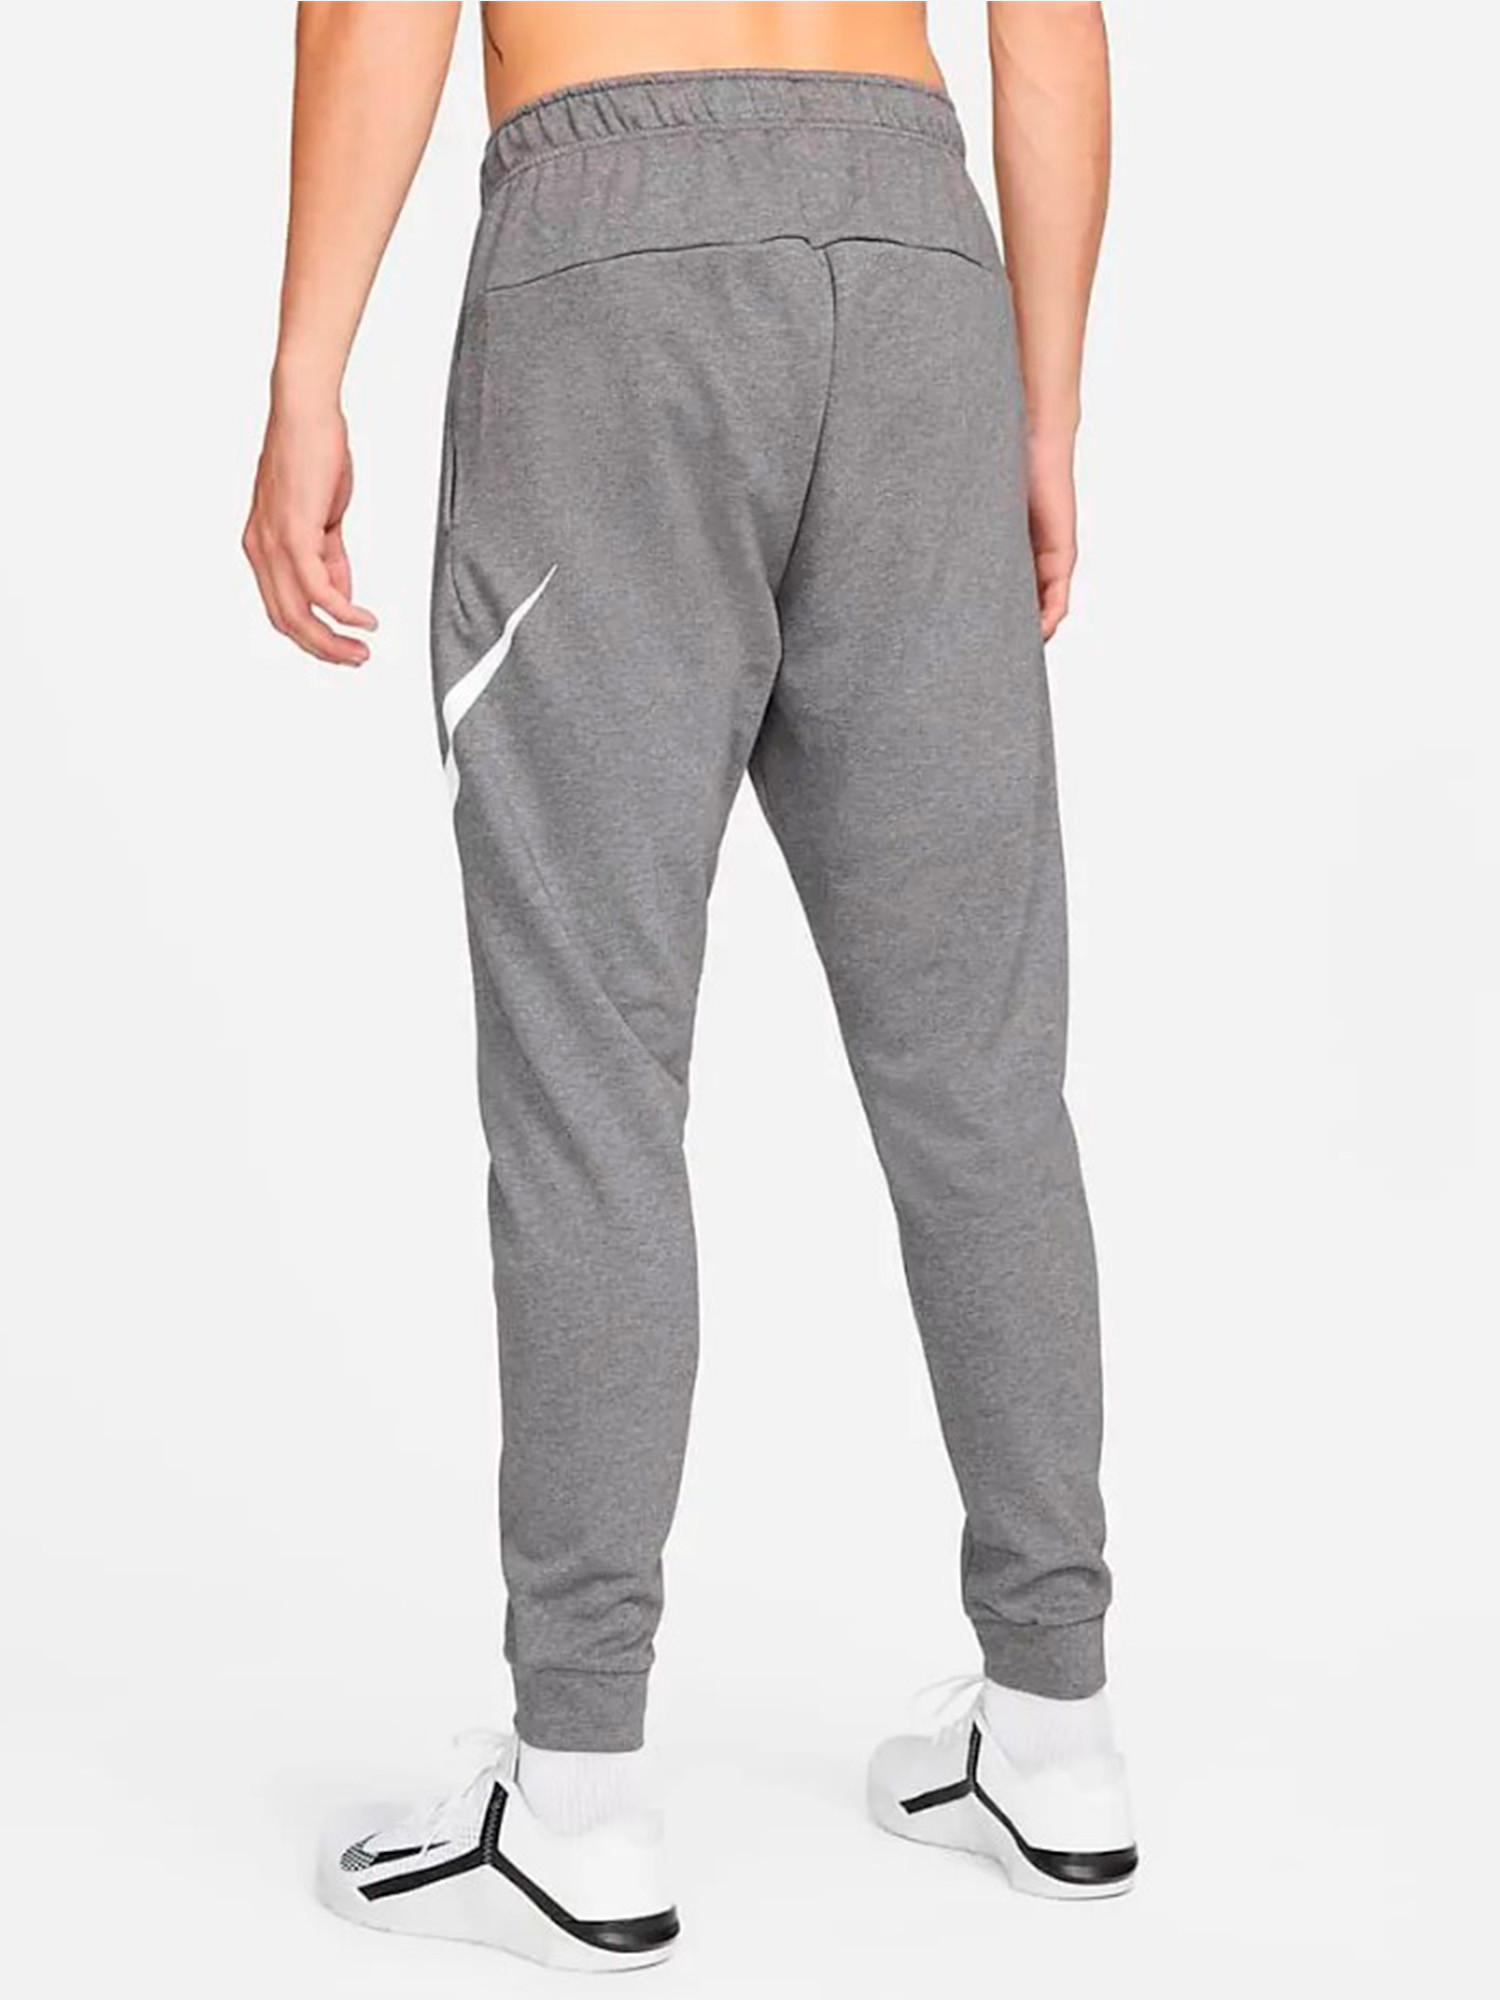 Брюки мужские Nike Dri-Fit Men's Tapered Training Pants